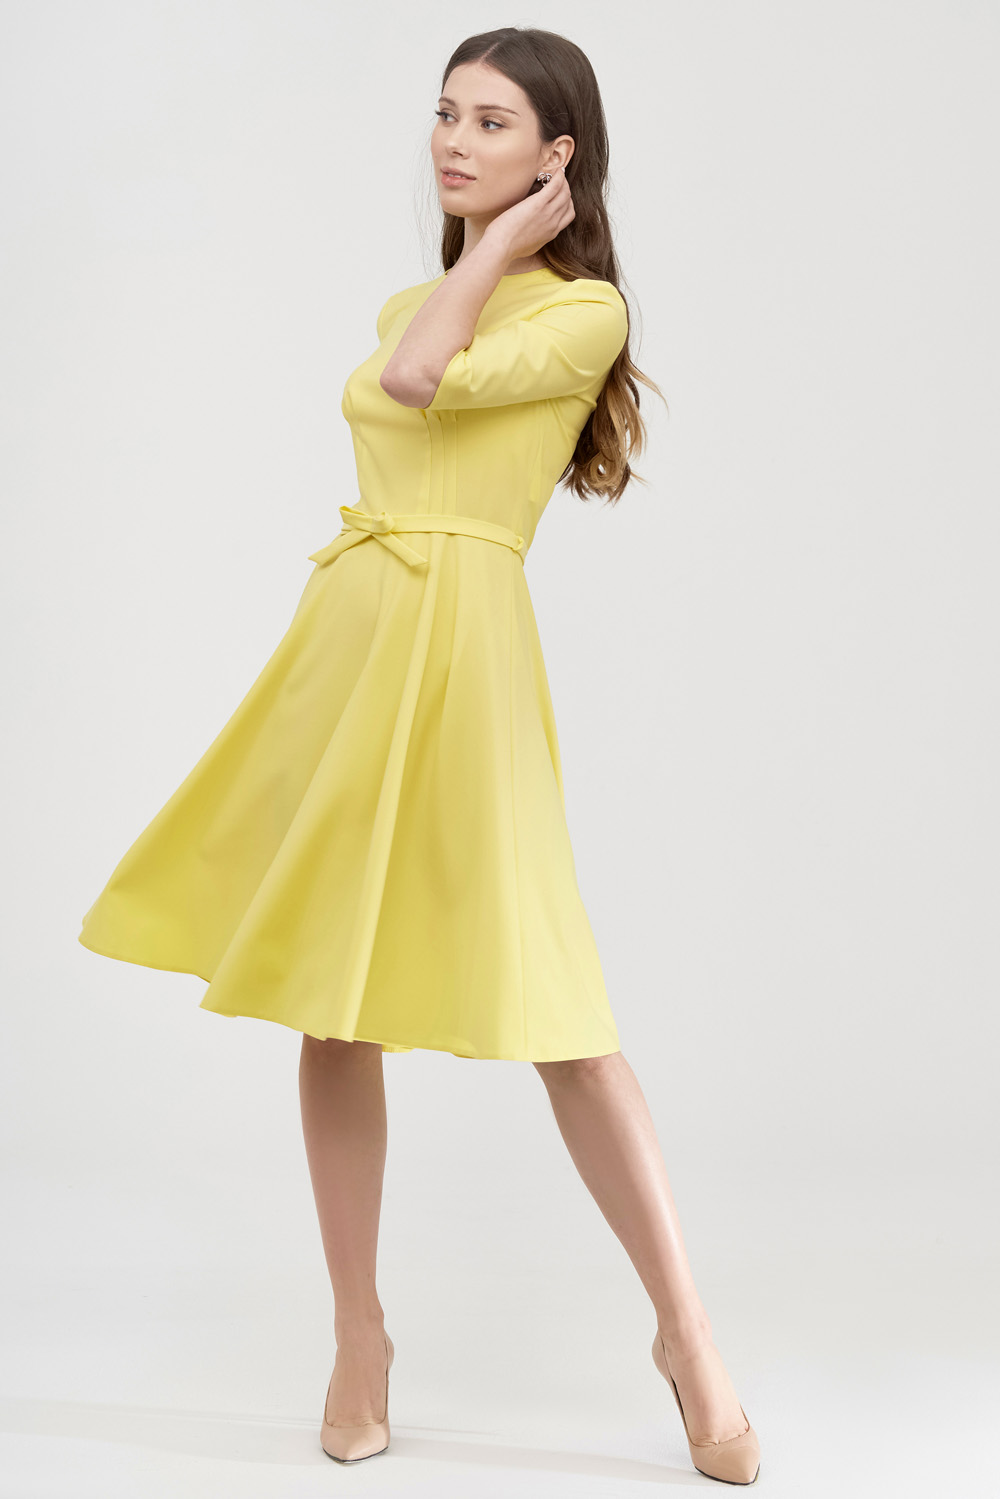 Платье лимонного цвета со съемным поясом